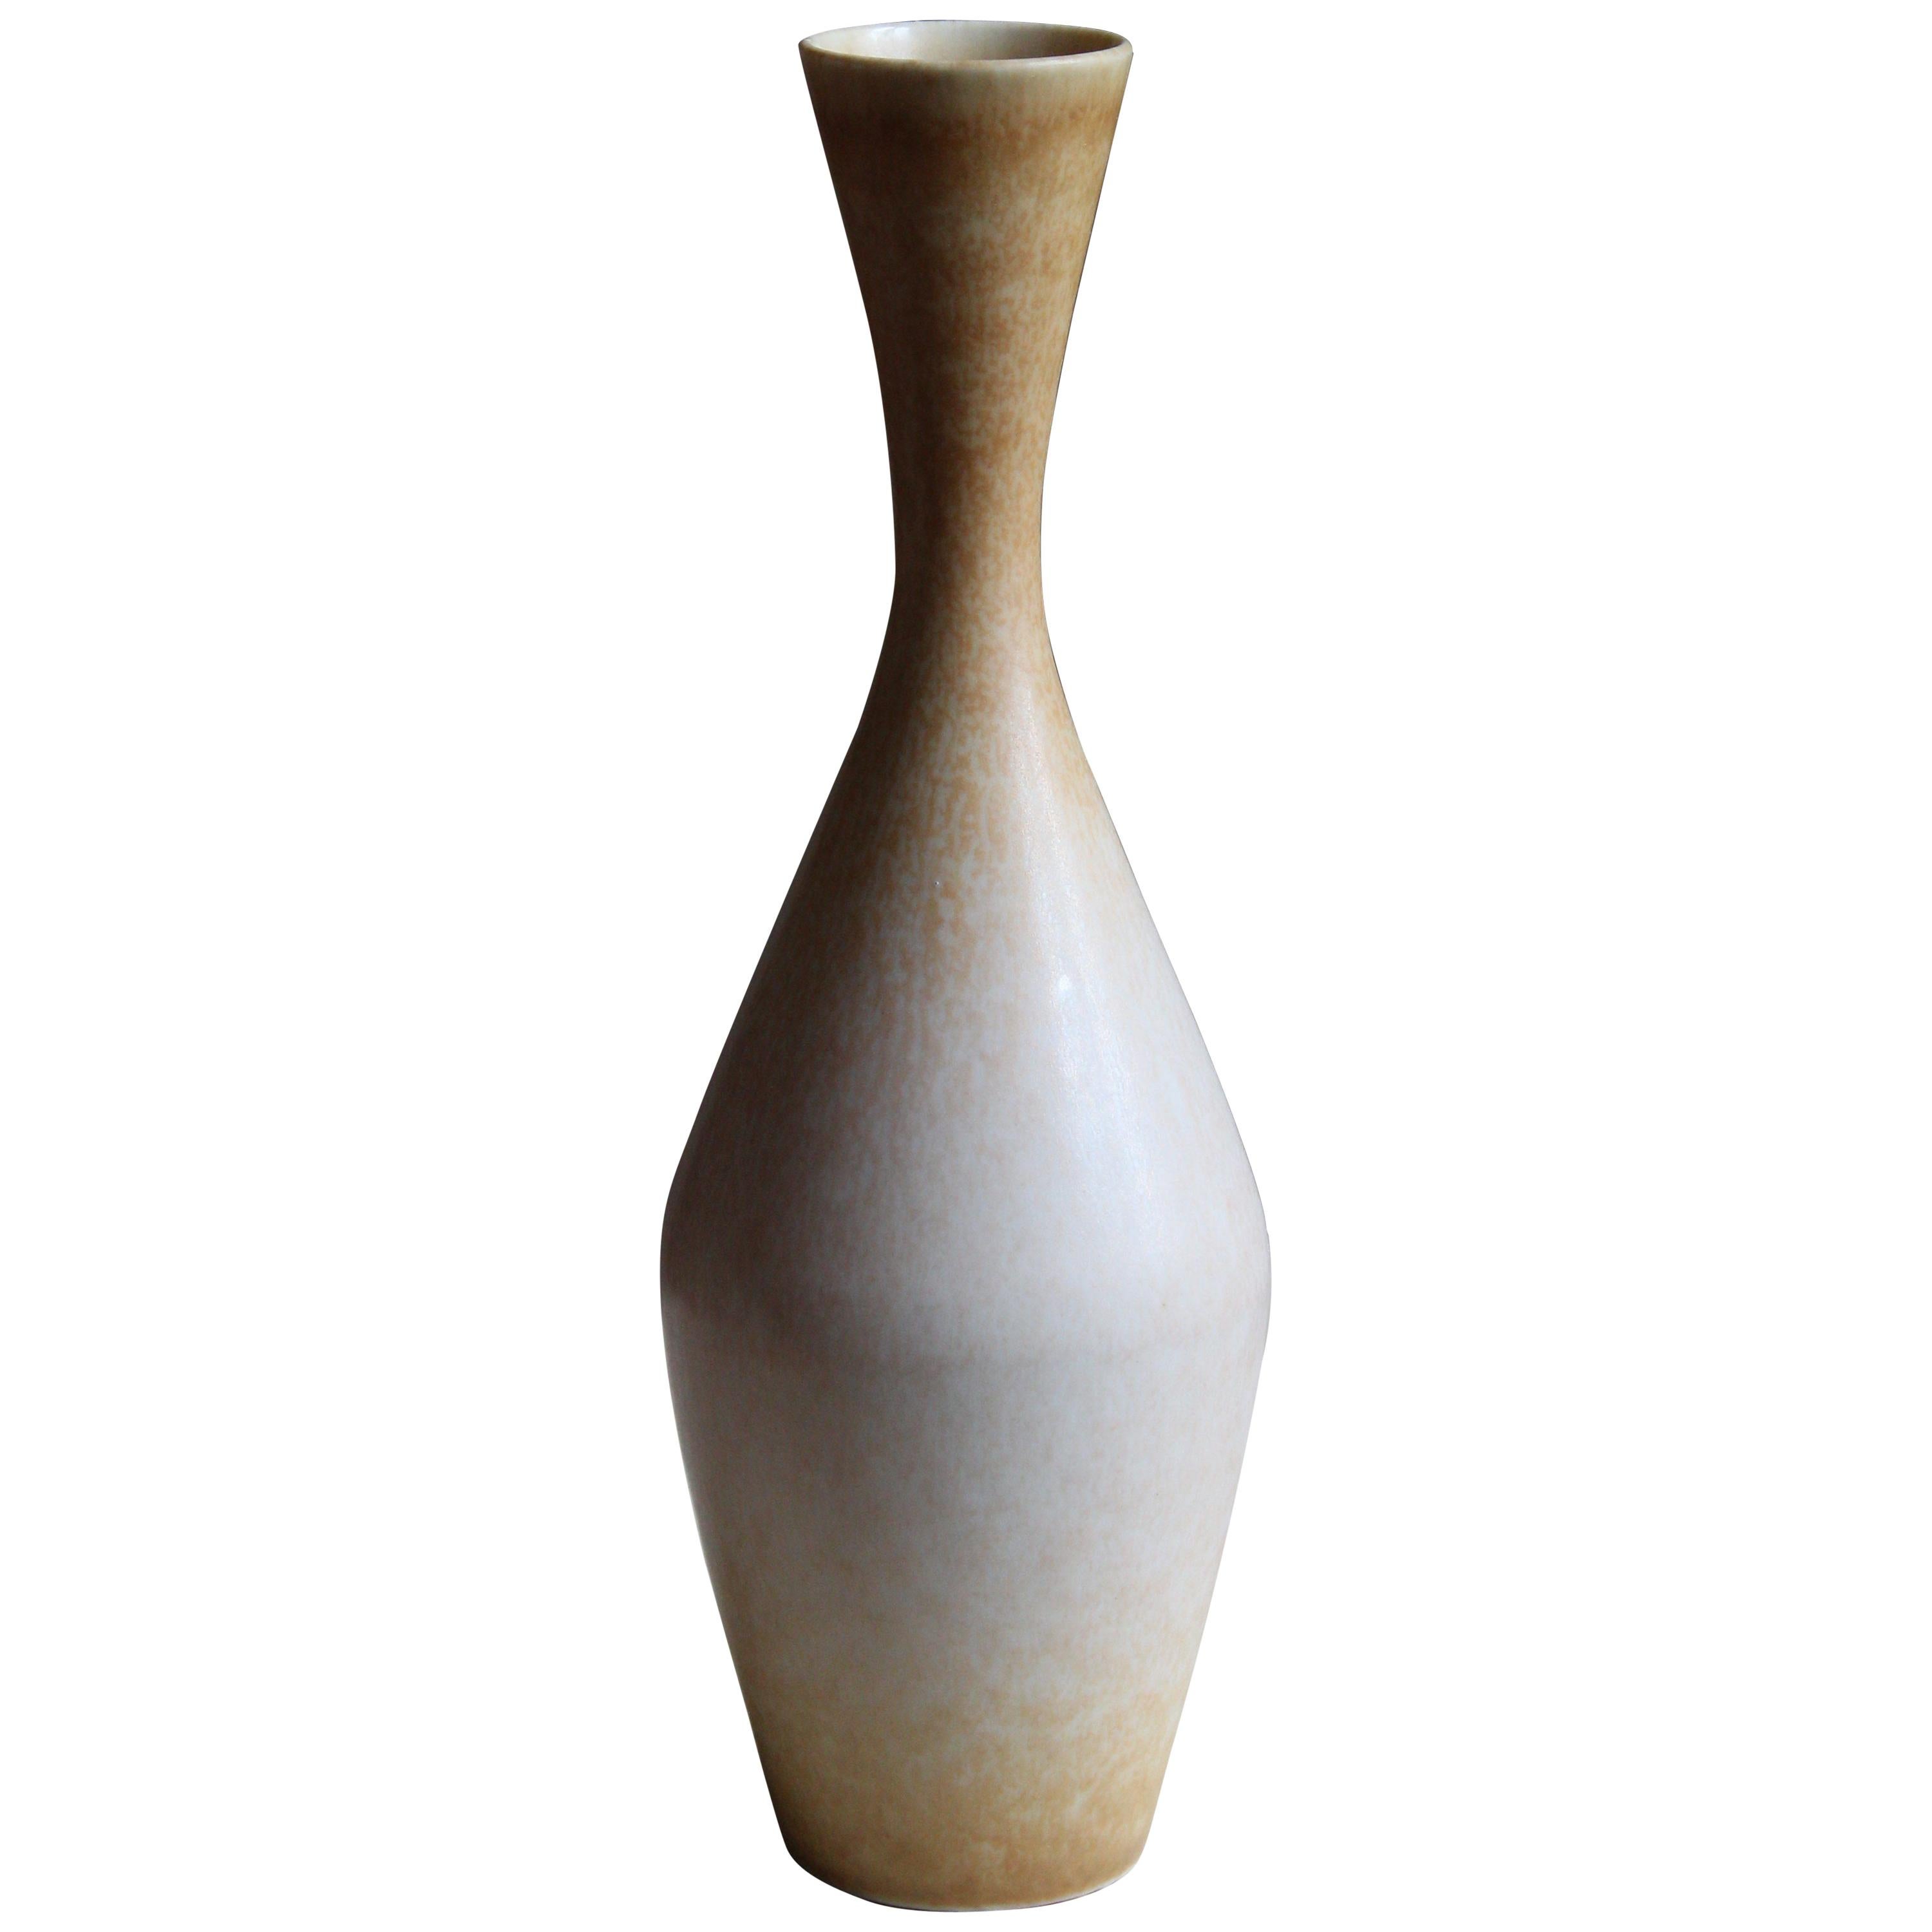 Sven Wejsfelt, Unique Vase / Vessel, Glazed Stoneware, Gustavsberg, 1989